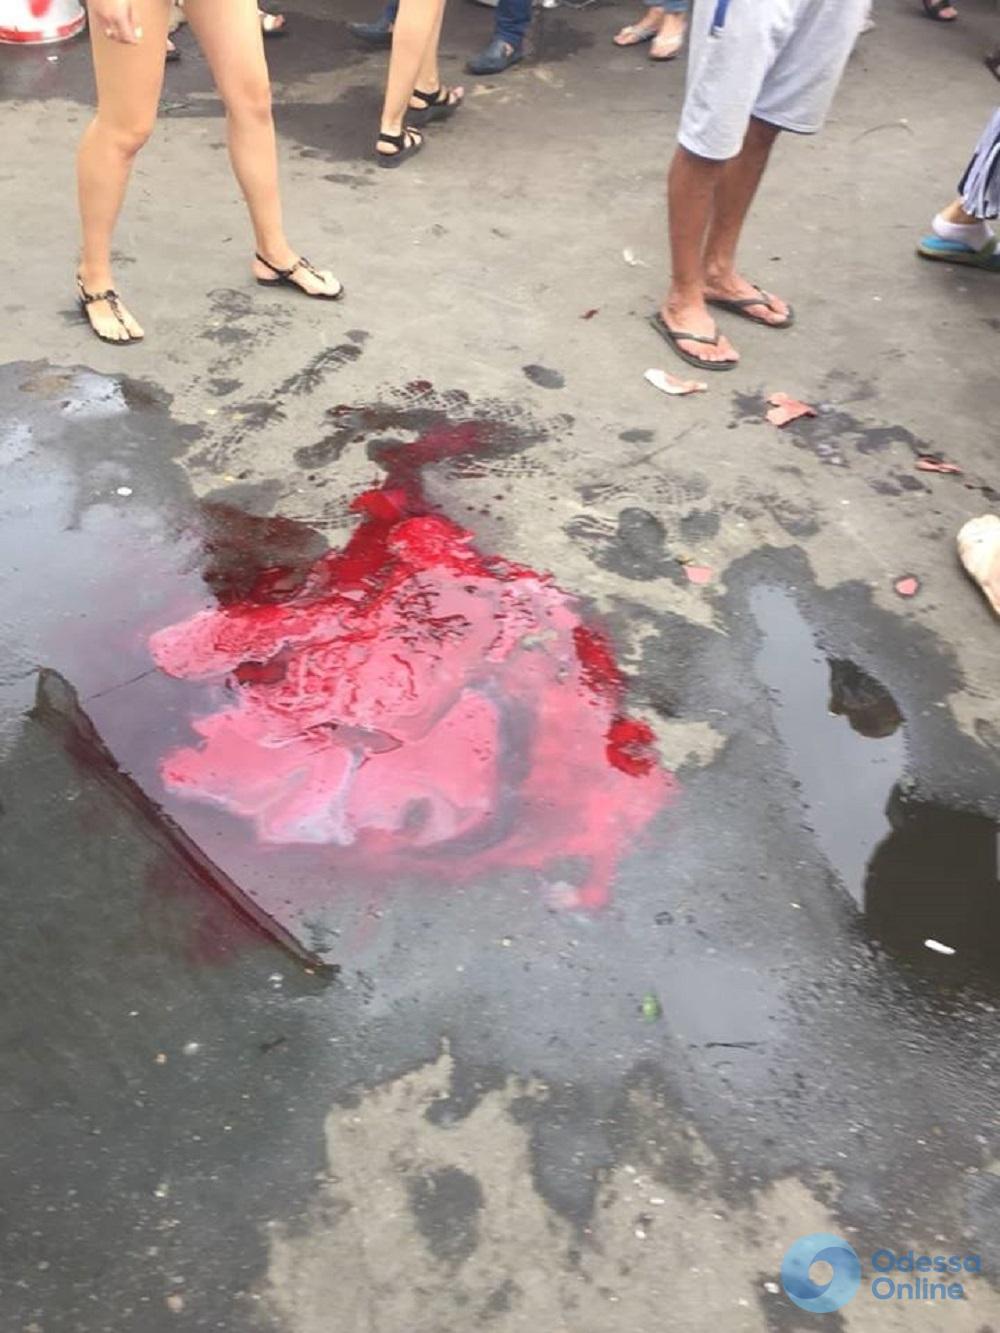 Истекал кровью: на одесском «Привозе» избили парня (обновляется)